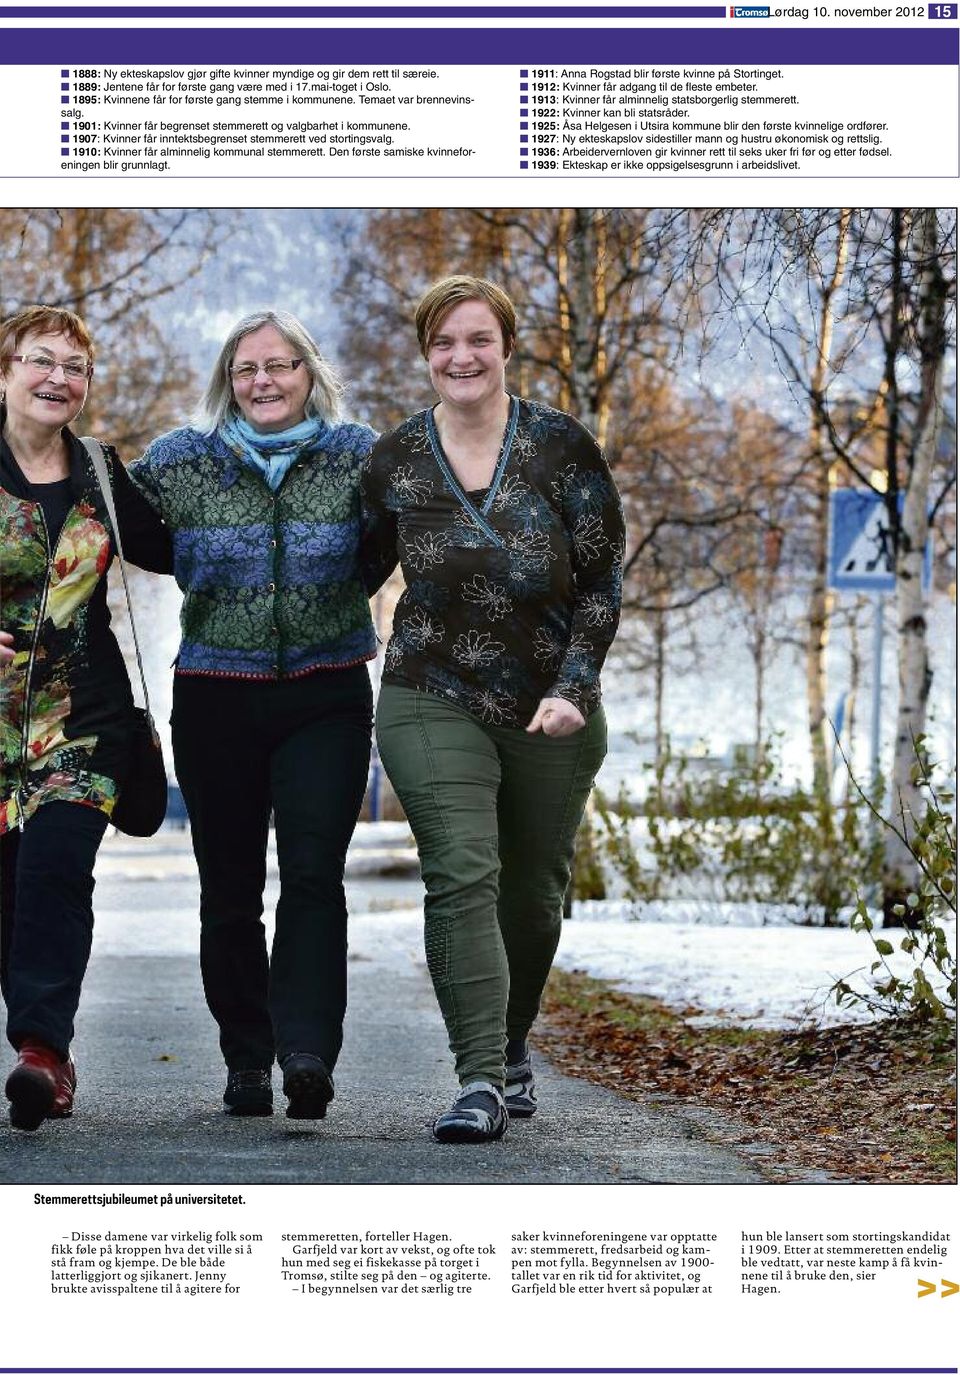 1907: Kvinner får inntektsbegrenset stemmerett ved stortingsvalg. 1910: Kvinner får alminnelig kommunal stemmerett. Den første samiske kvinneforeningen blir grunnlagt.